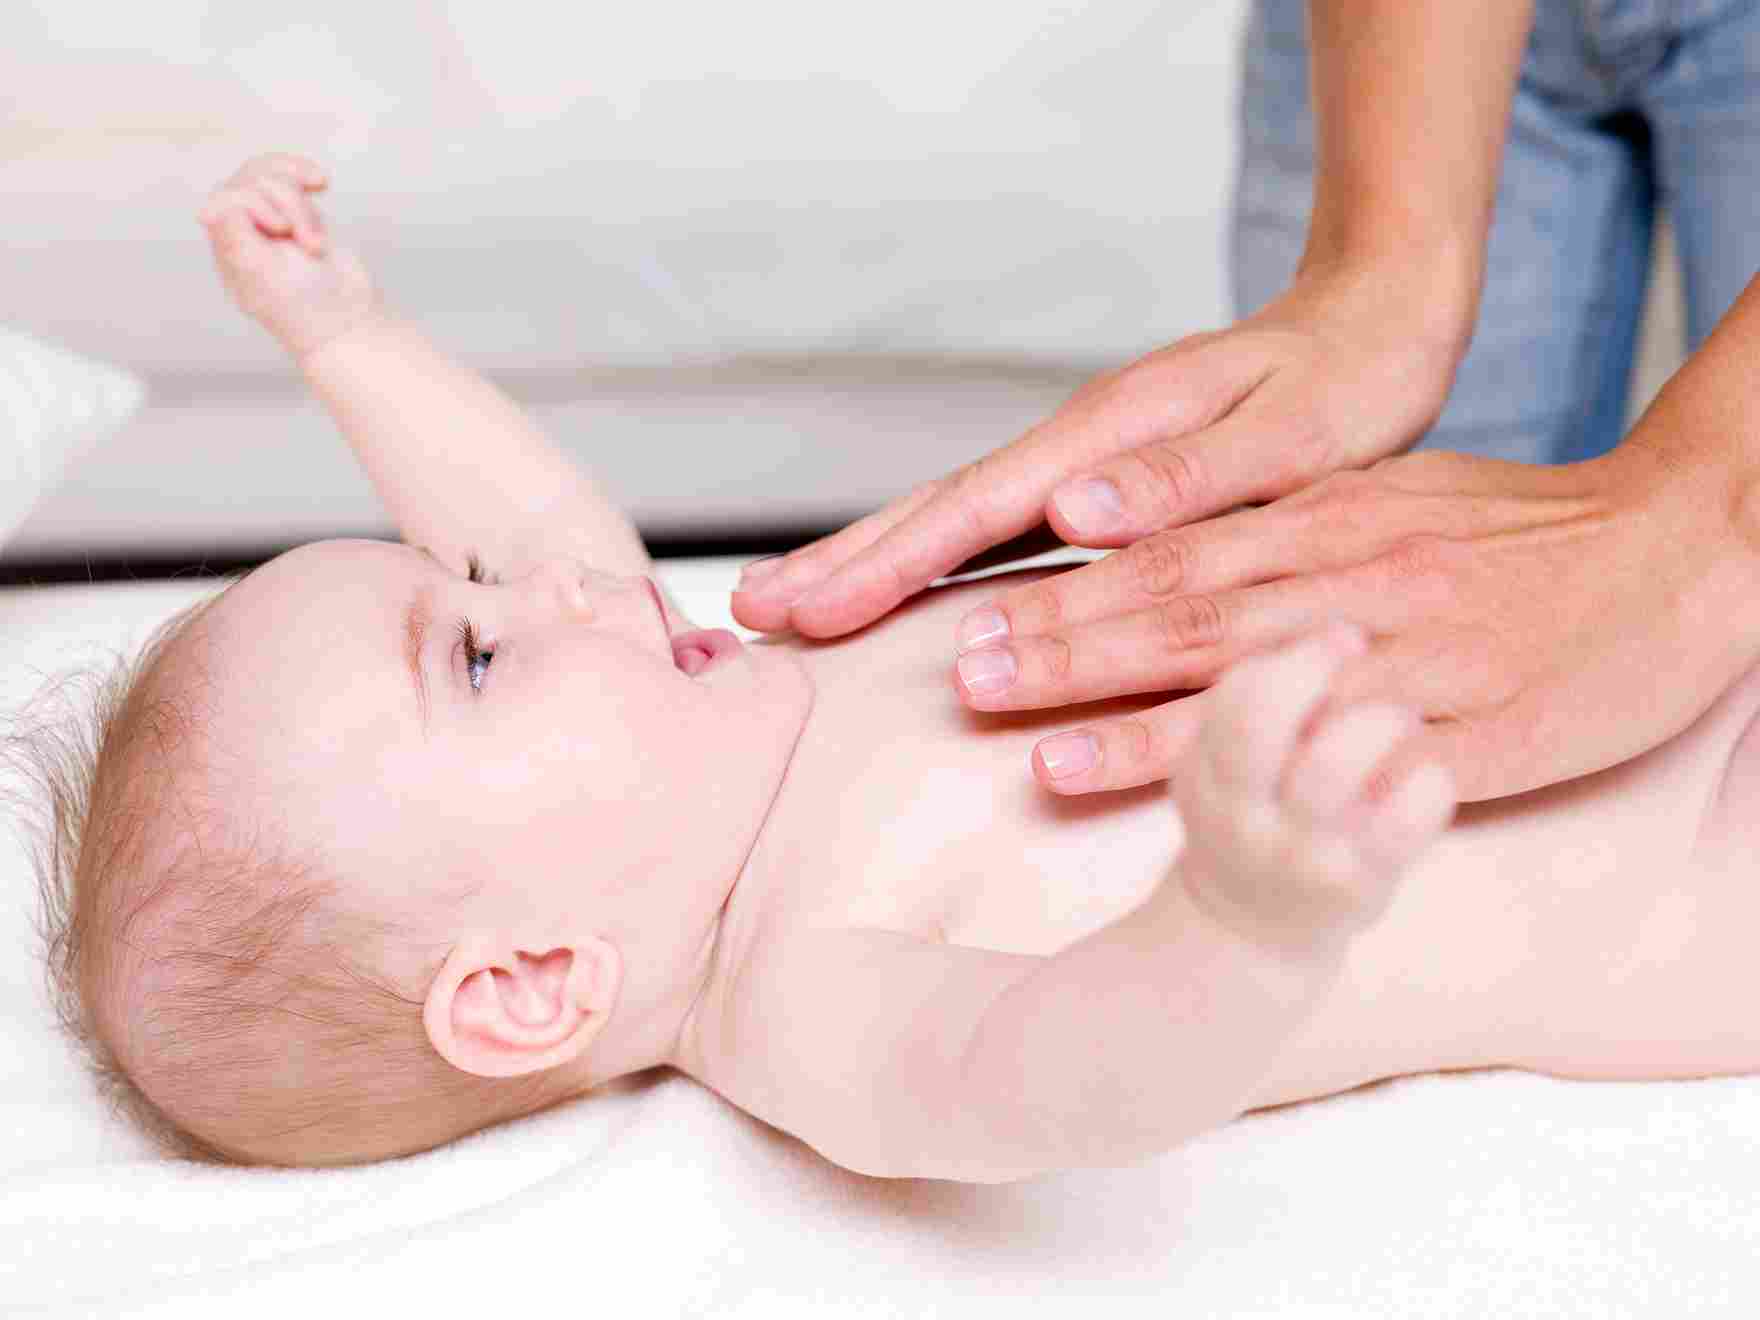 massaging-newborn-baby_11zon